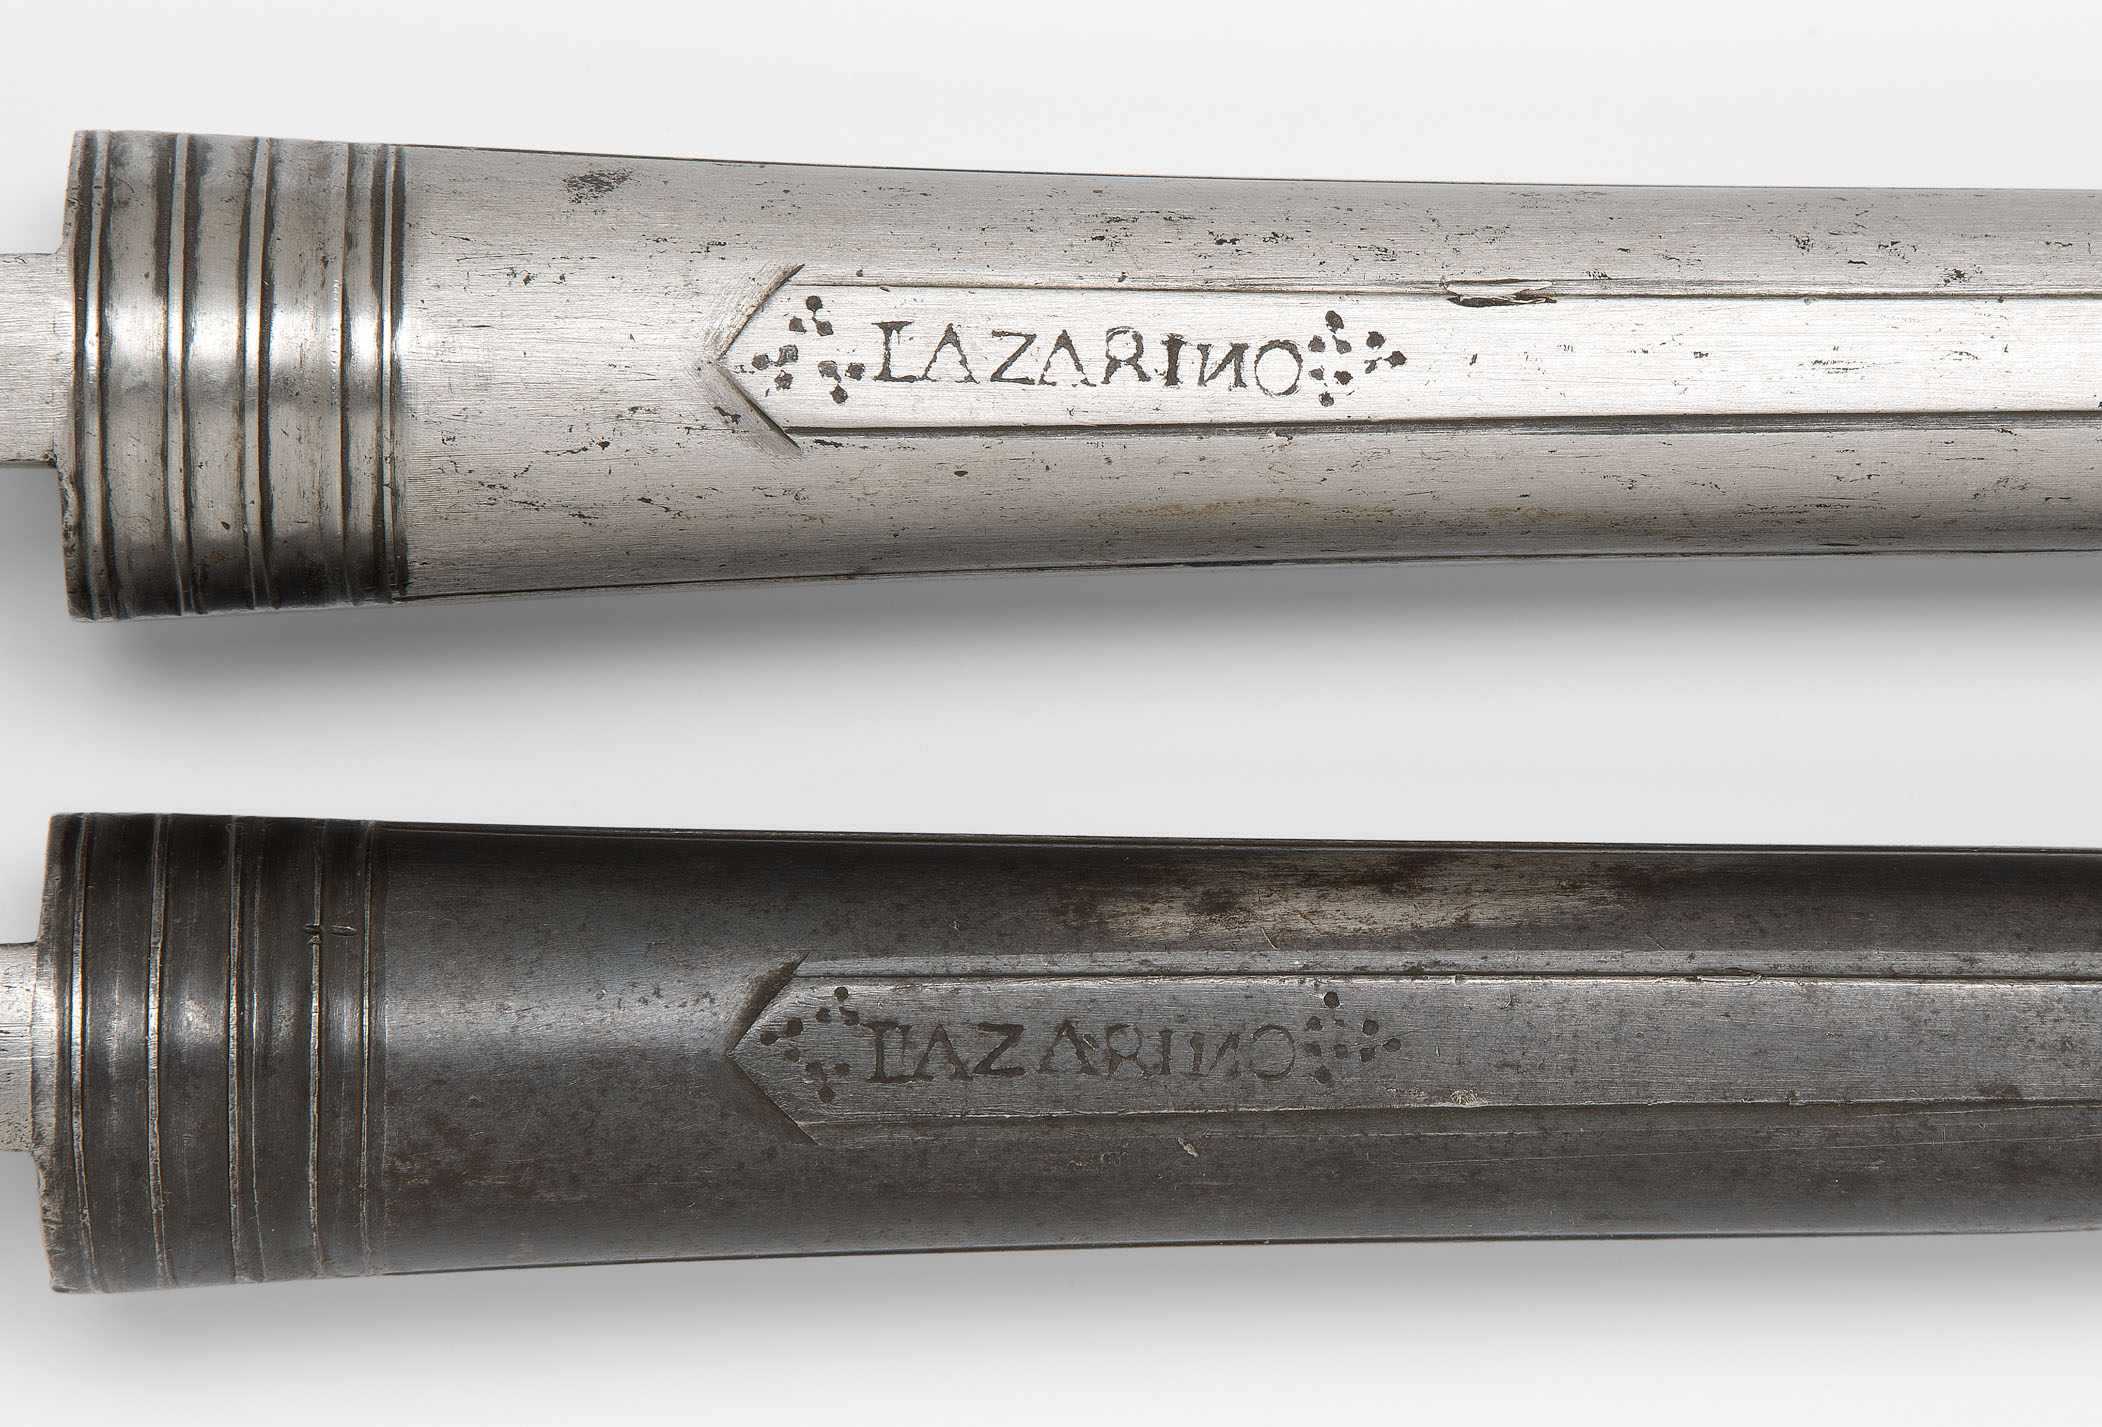 1 Paar Pistolenläufe Italien, Mitte 17. Jh., signiert Lazarino. Stahl. Zwei grosse, gleich lange - Bild 2 aus 2